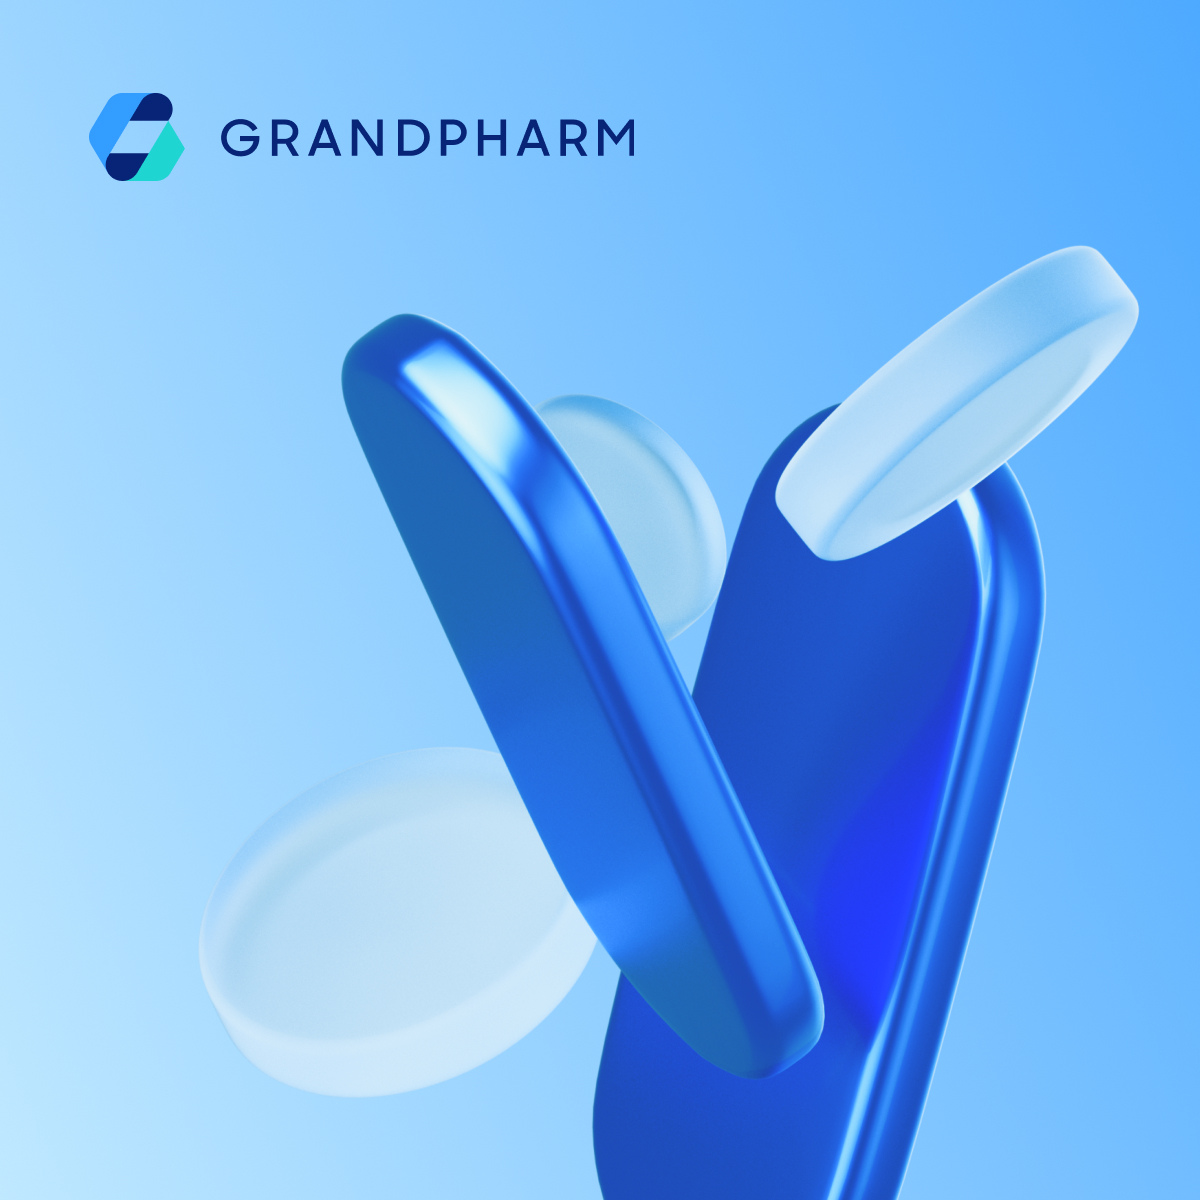 GRANDPHARM website design